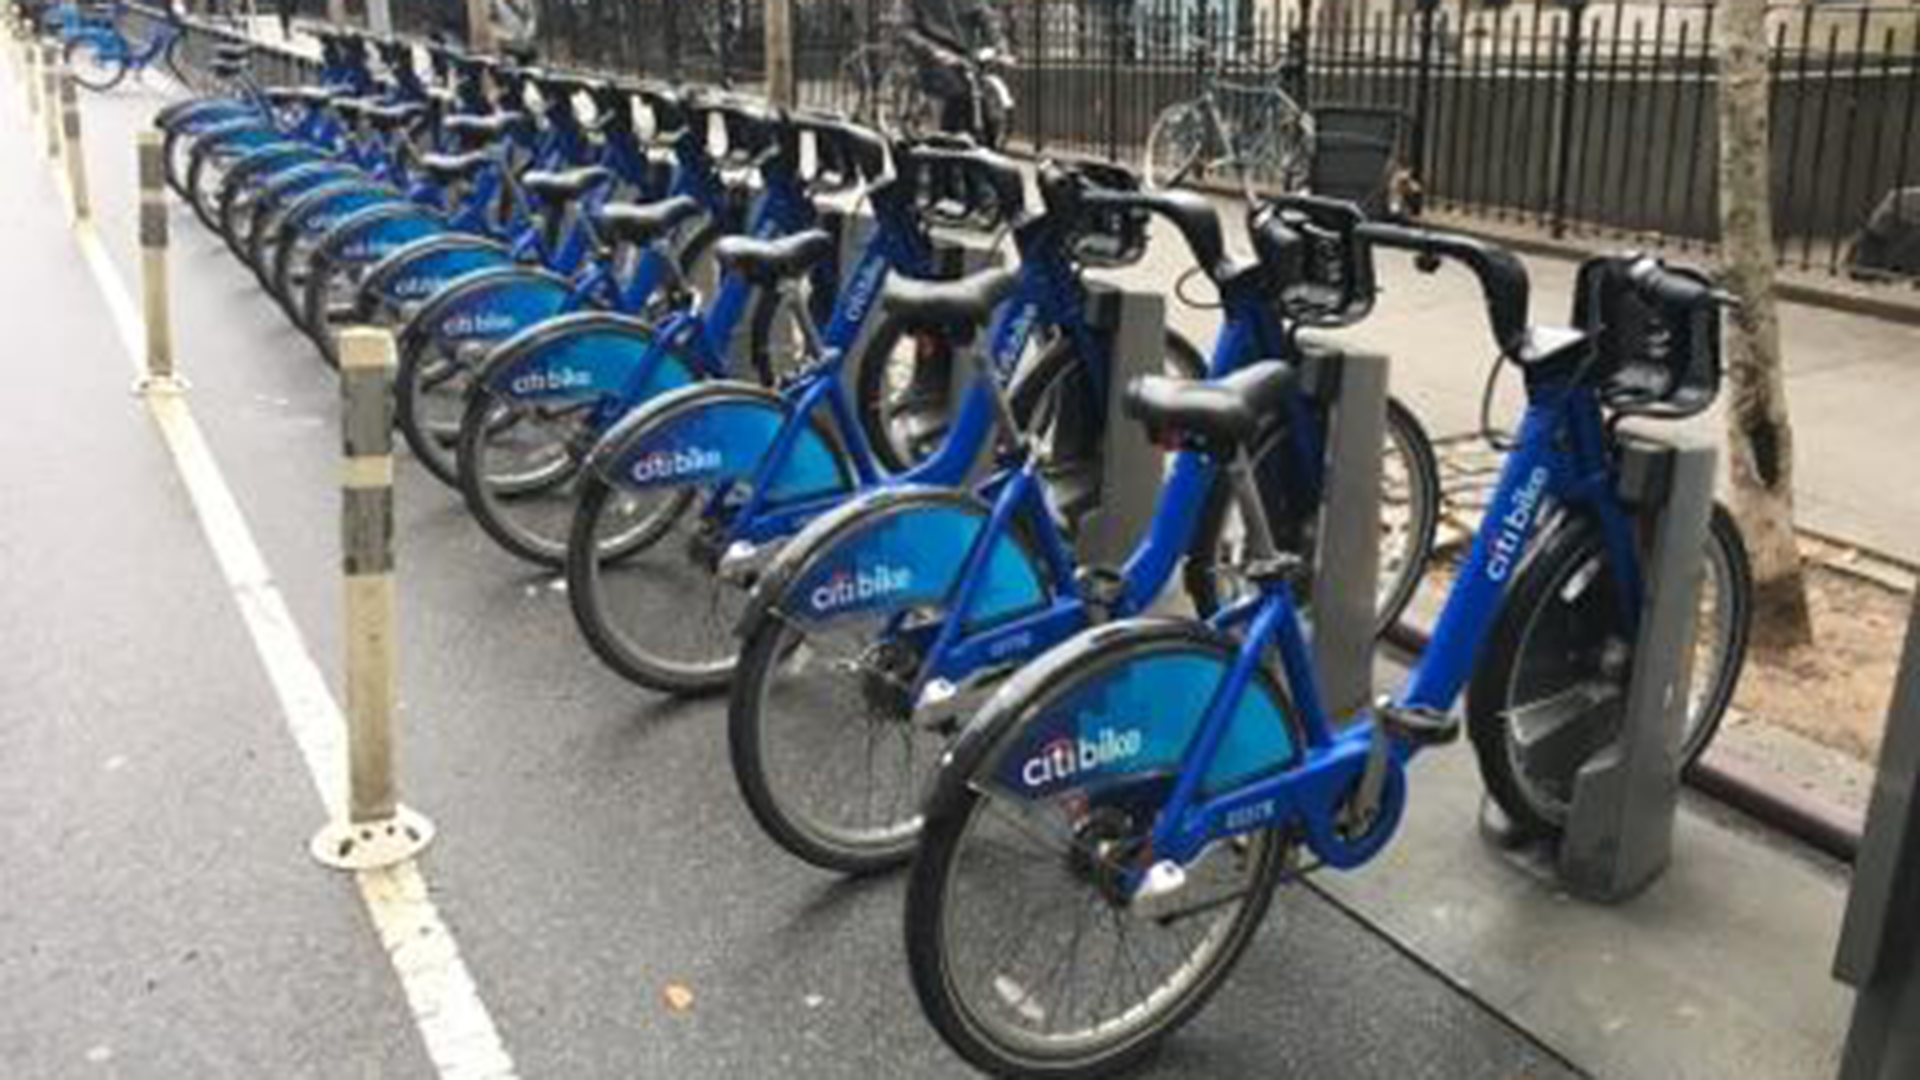 Row of Citibike bikes in New York City